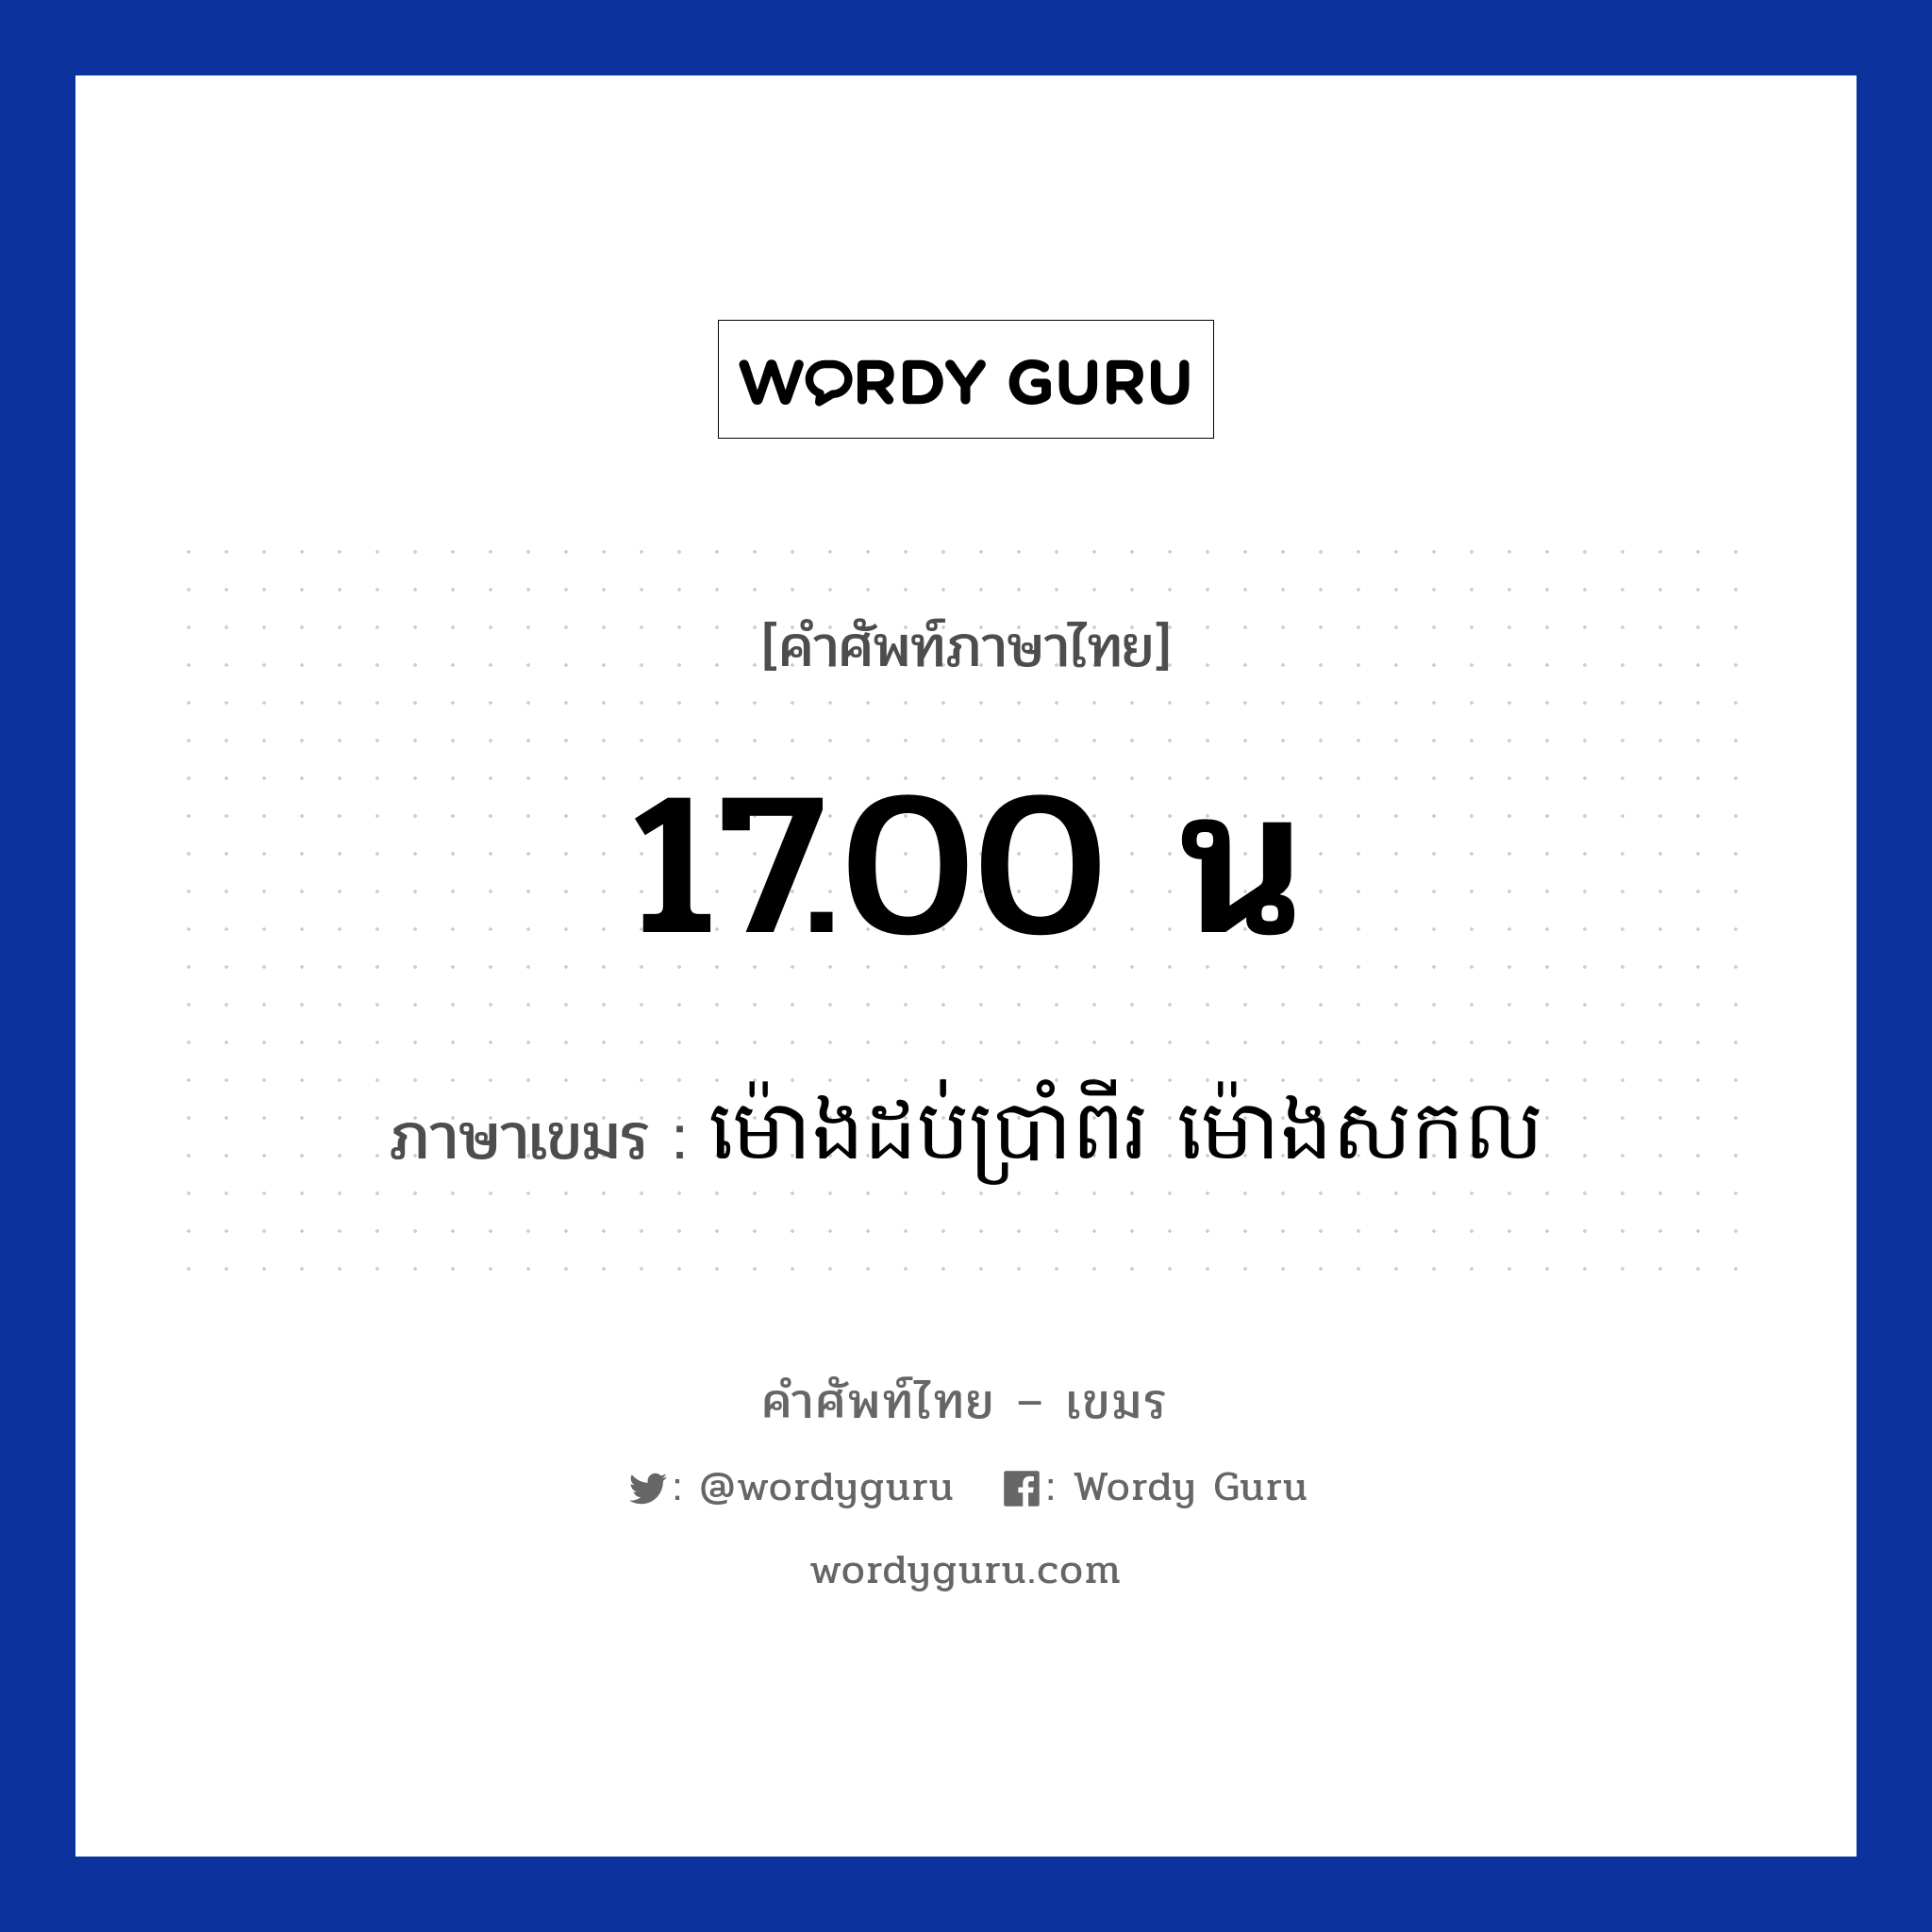 17.00 น ภาษาเขมรคืออะไร, คำศัพท์ภาษาไทย - เขมร 17.00 น ภาษาเขมร ម៉ោងដប់ប្រាំពីរ​​ ម៉ោងសកល หมวด เวลา Mong dobbrampii mong sakkol หมวด เวลา